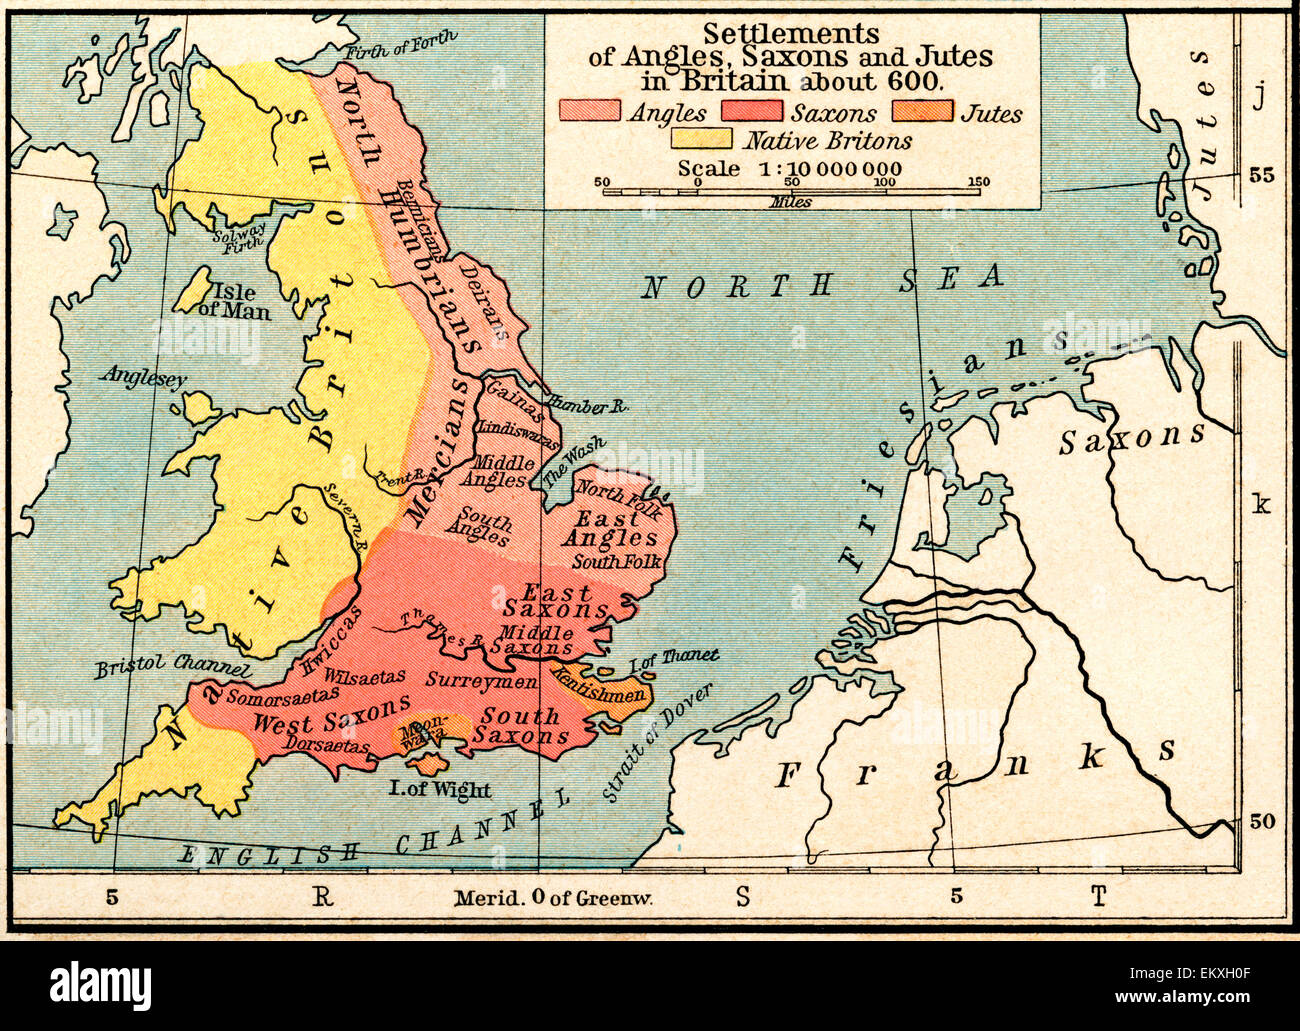 La carte des colonies d'Angles, Saxons et Jutes en Grande-Bretagne c. 600  Photo Stock - Alamy